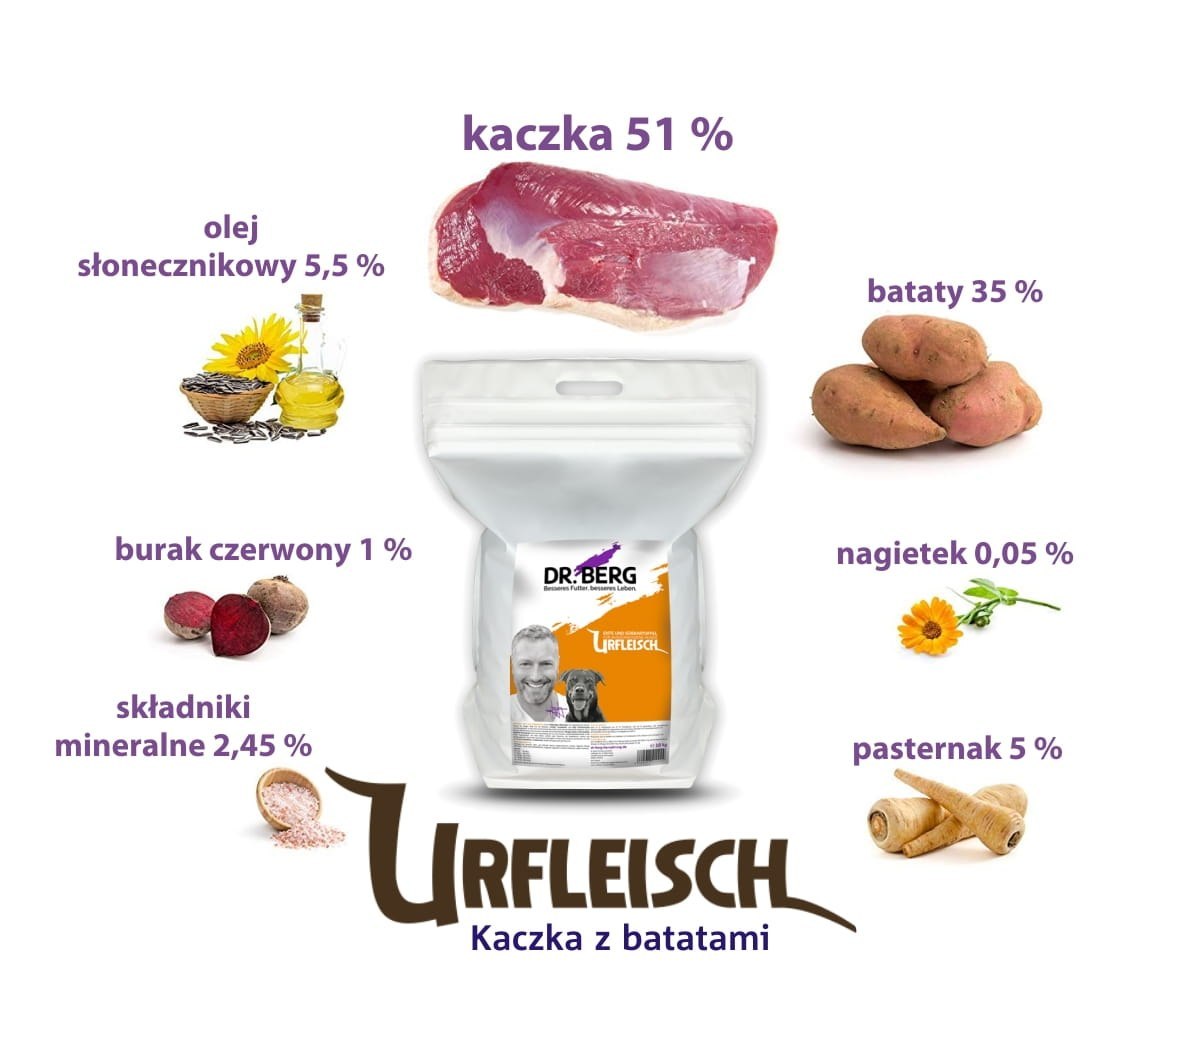 Dr.Berg Urfleisch - kaczka z batatami dla psów (5kg)